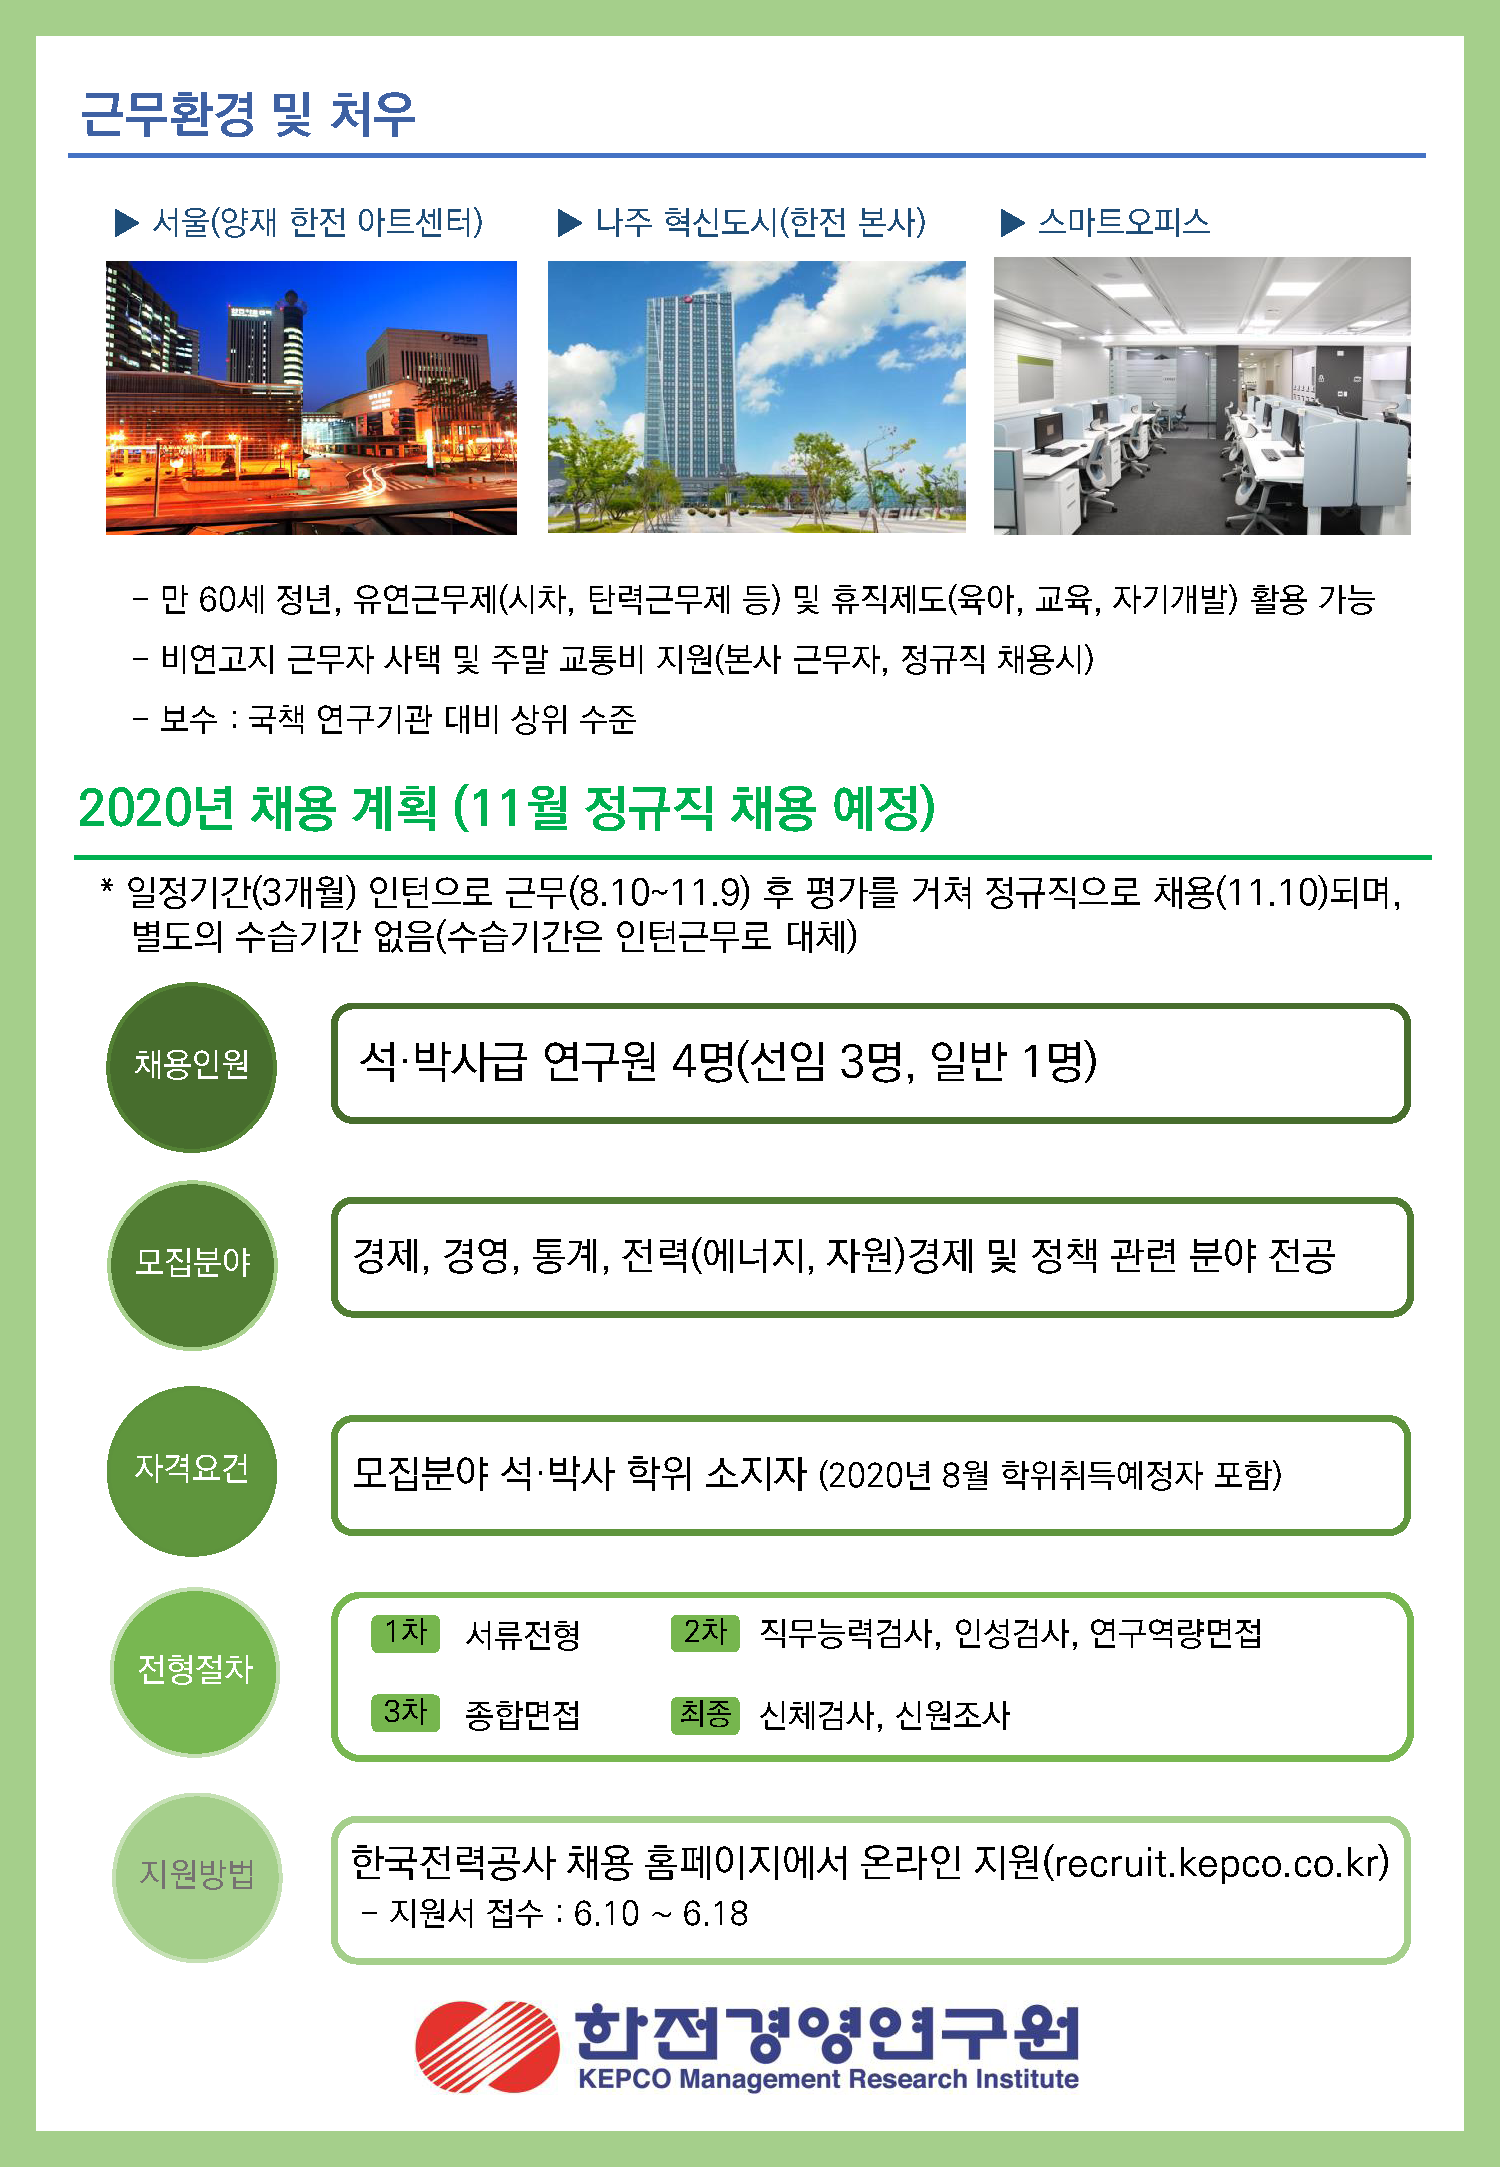 2020_한전 경영연구원 소개 팜플렛_페이지_2.png